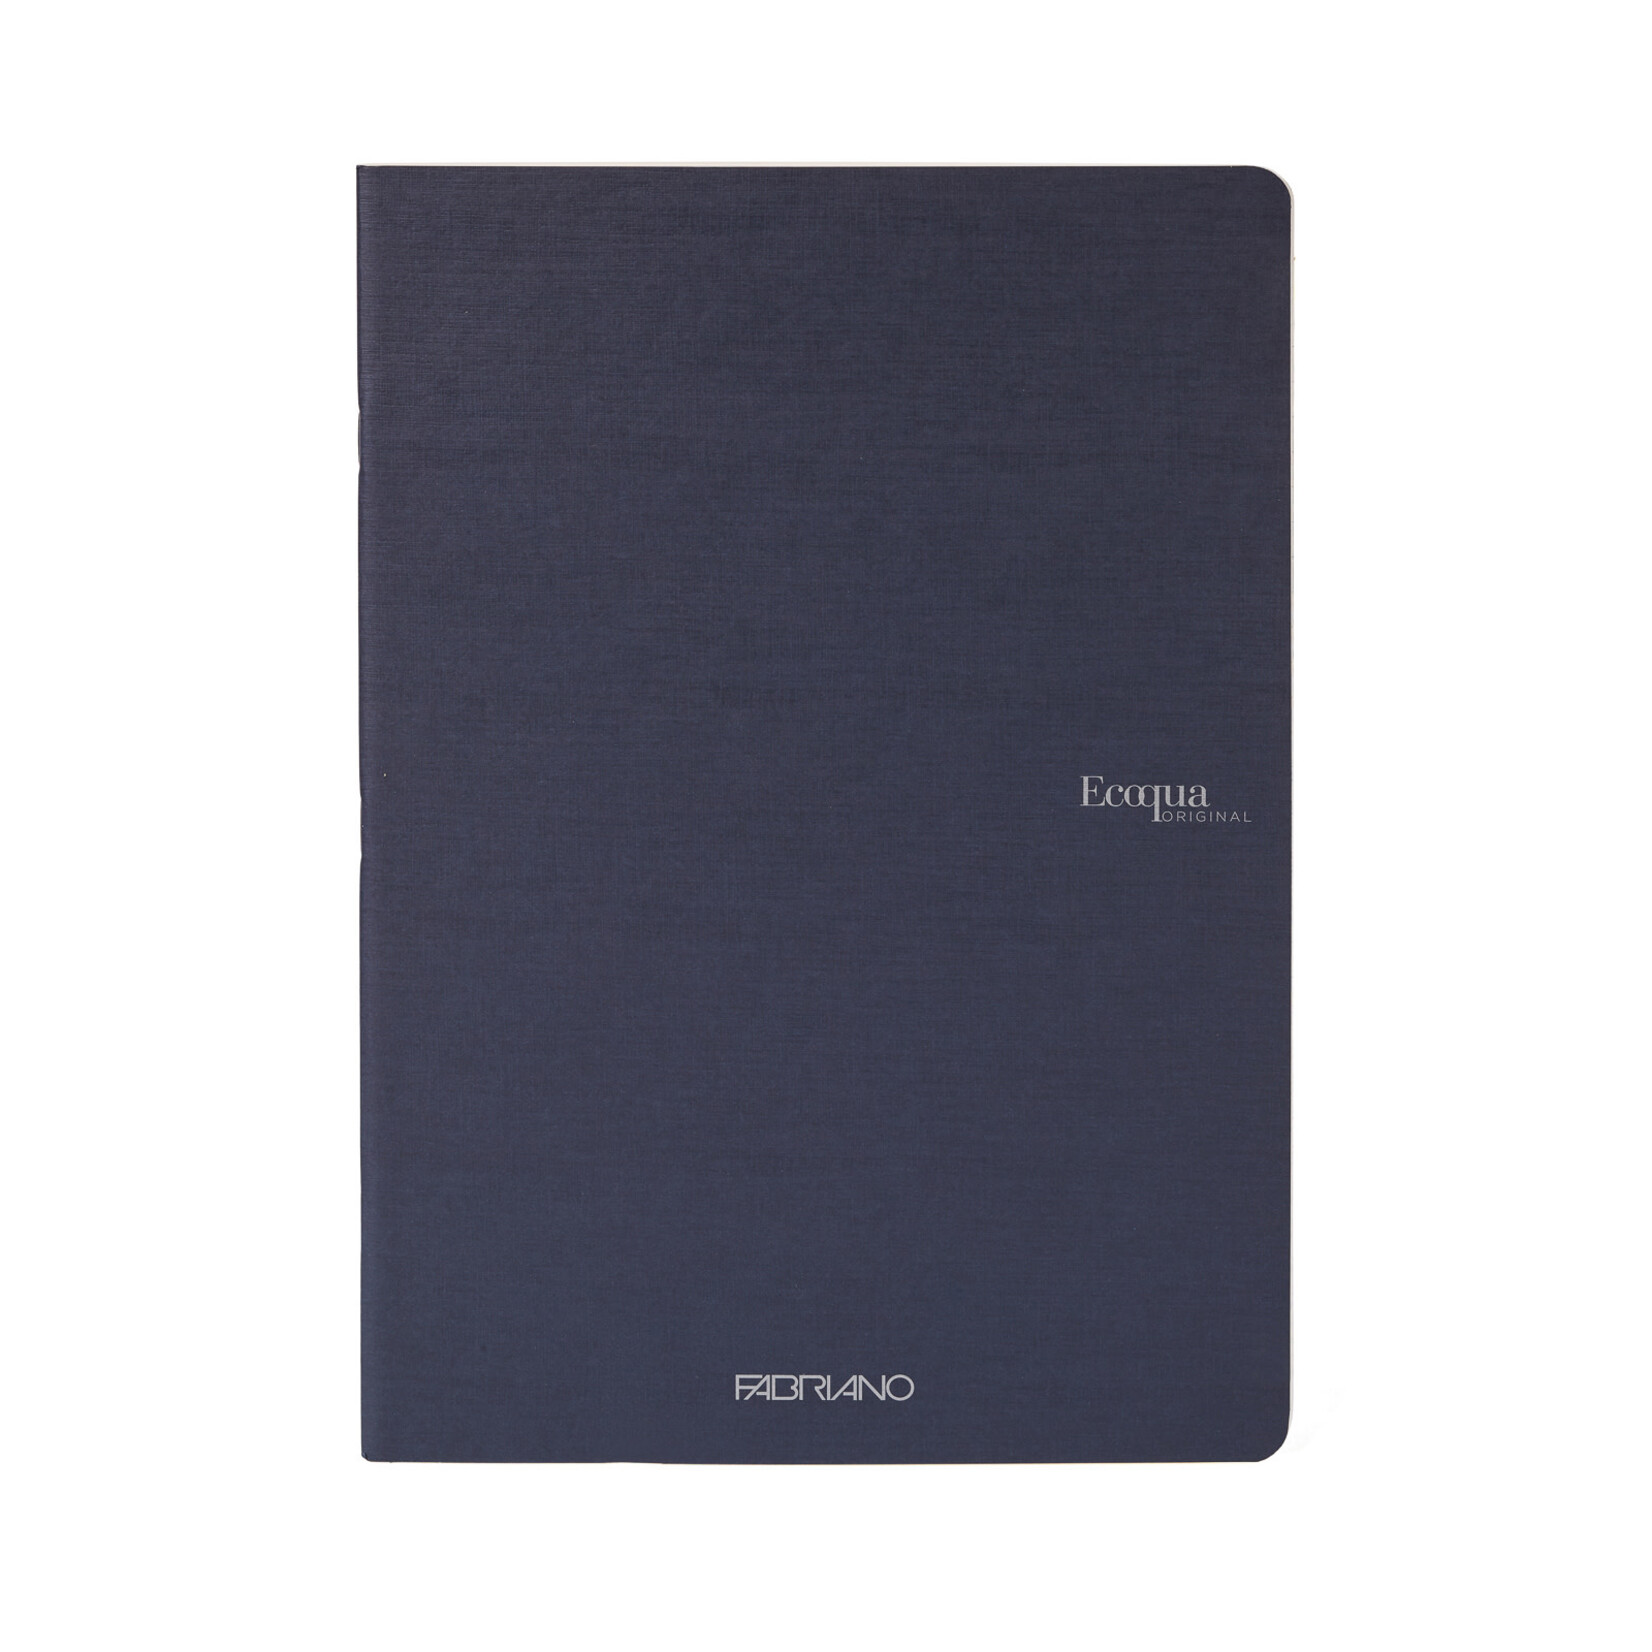 Fabriano Ecoqua Original Staple-Bound Notebooks, 5.8" x 8.3" (A5) - Blank, Navy - 40 Shts